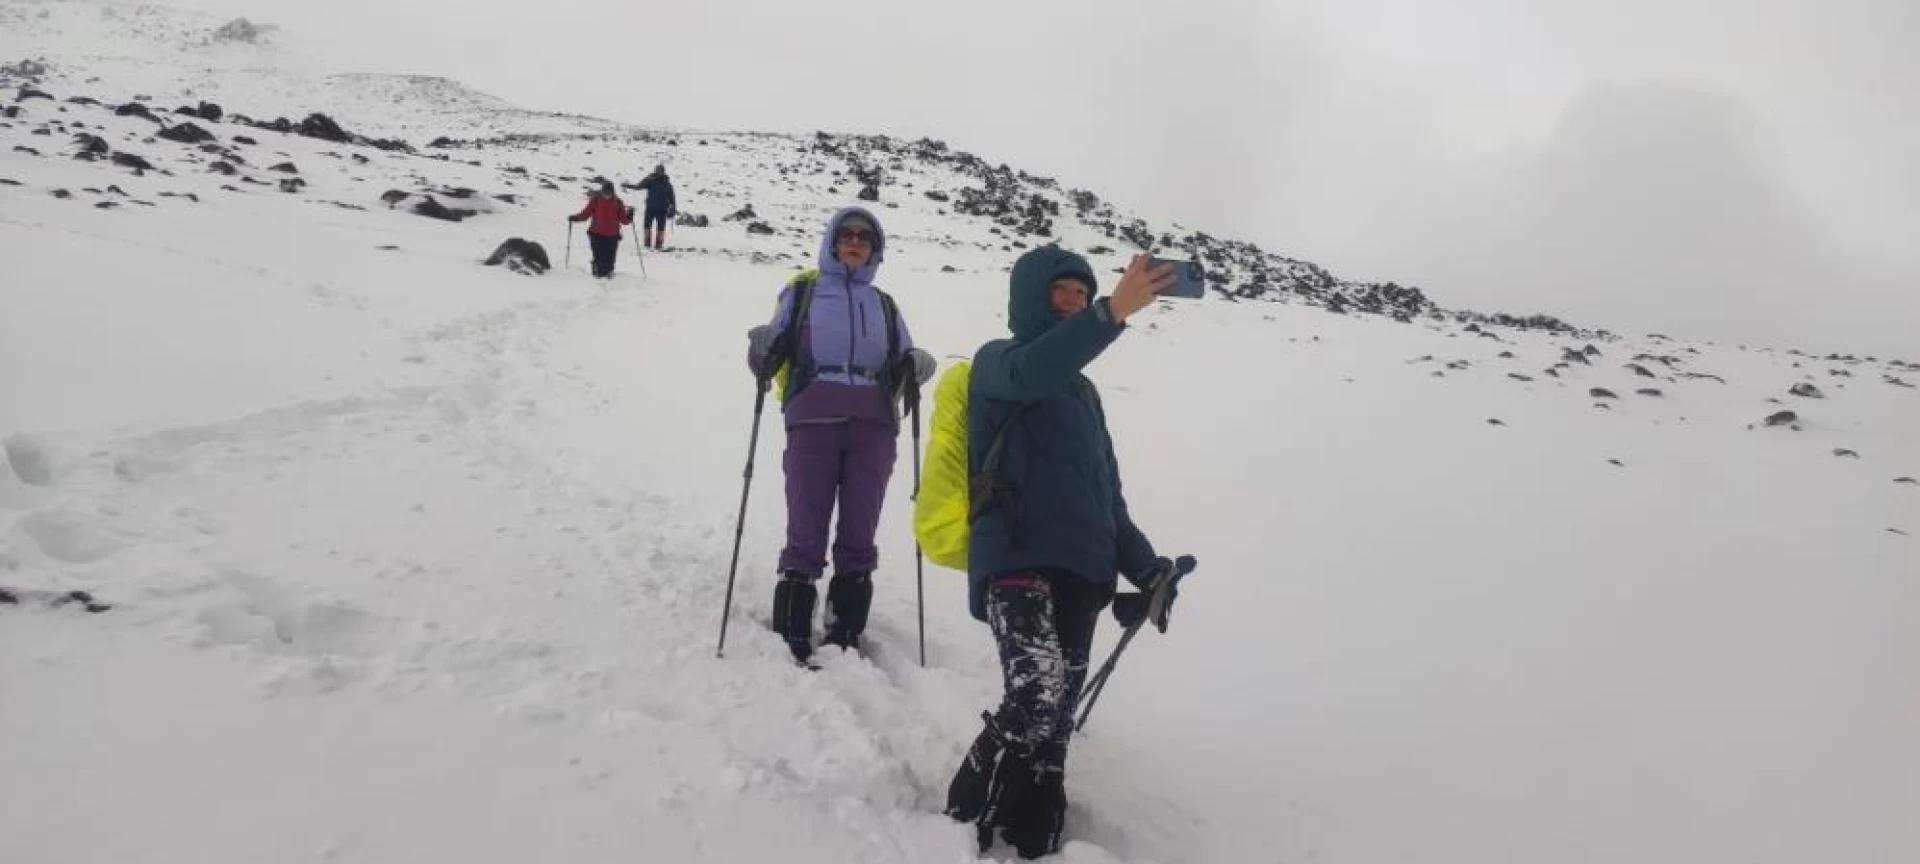 Ağrı Dağı kadın dağcılara geçit vermedi ( Video Haber )